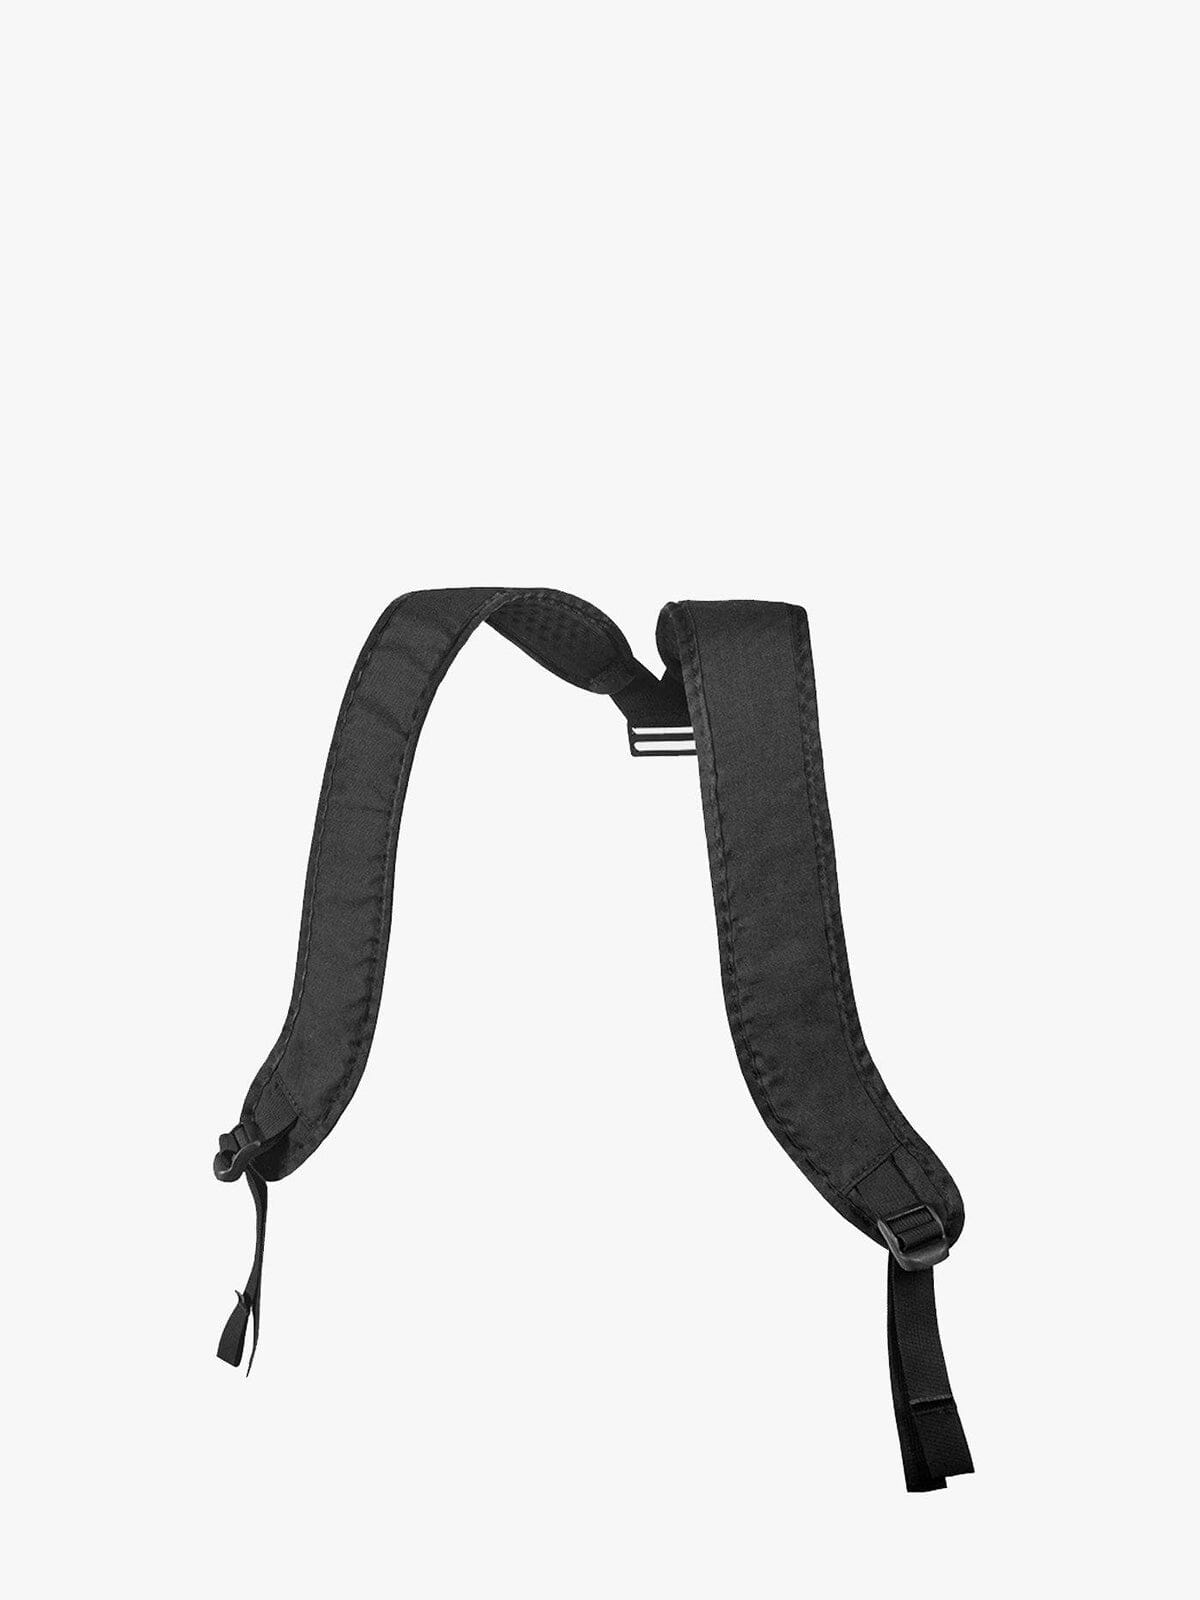 Transit : Duffle Backpack Harness by Mission Workshop - Bolsas resistentes a la intemperie y ropa técnica - San Francisco y Los Angeles - Construido para resistir - Garantizado para siempre